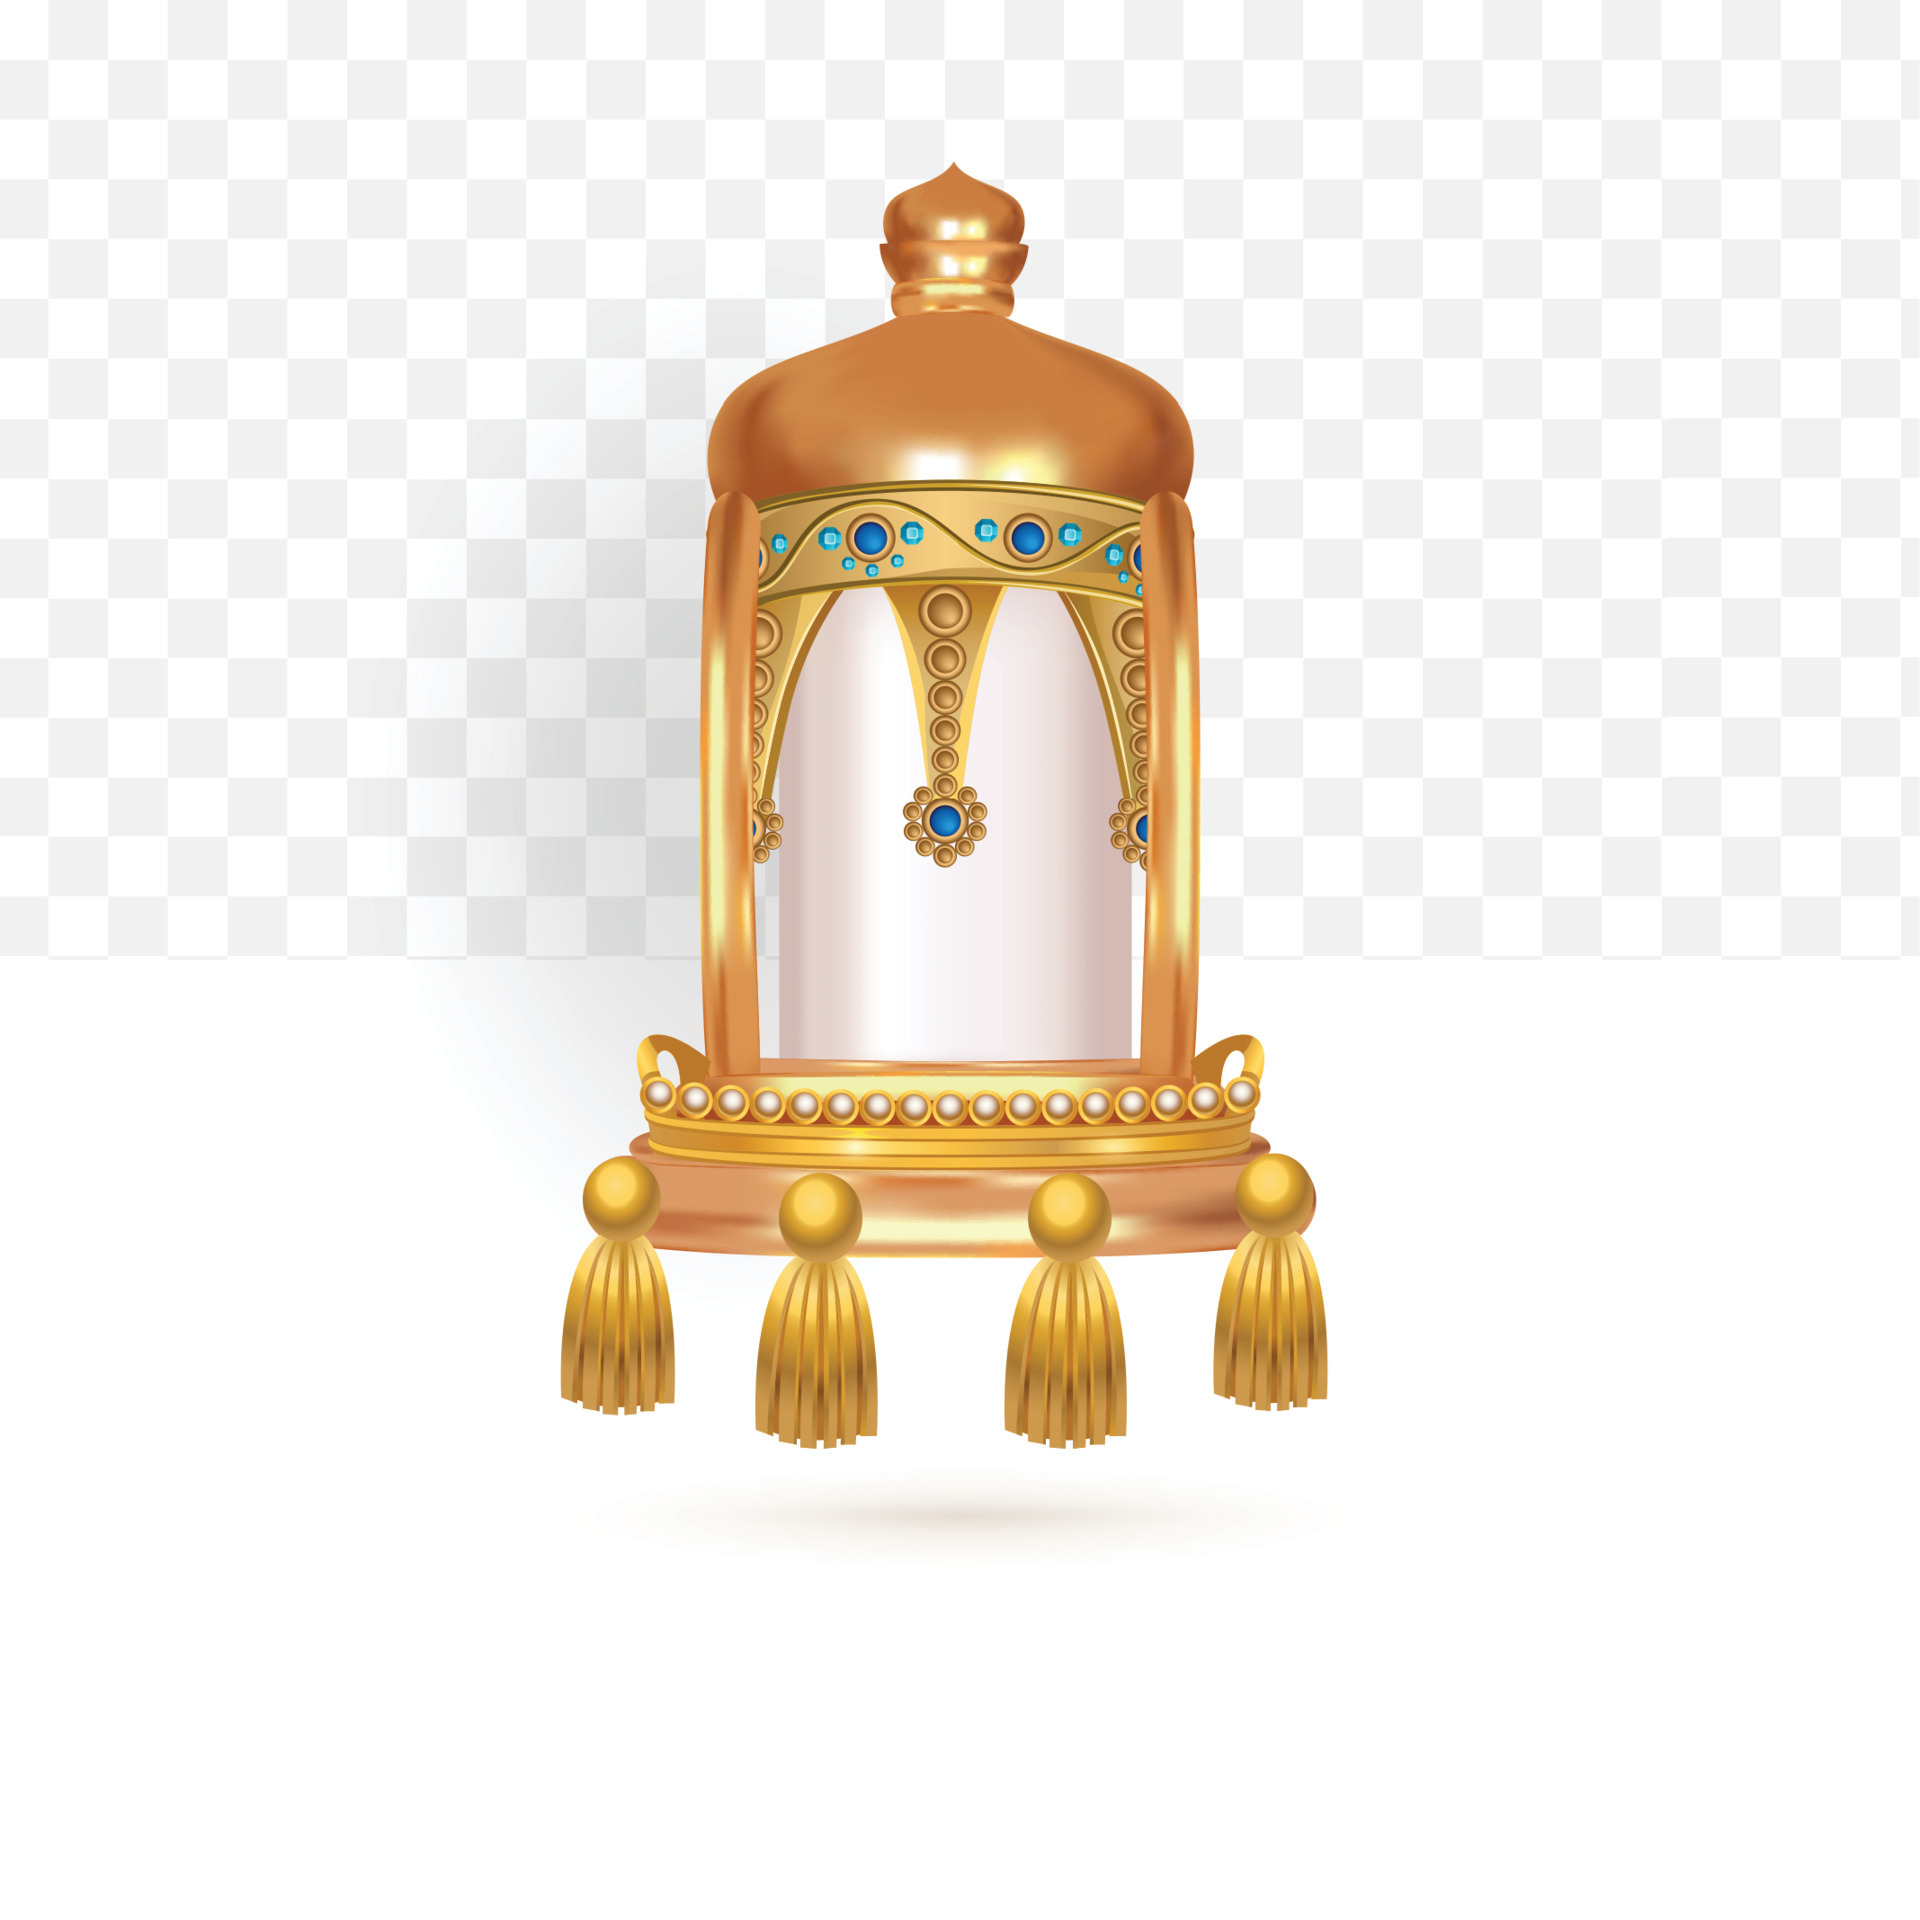 Cùng chiêm ngưỡng sự đẹp và sang trọng của đèn lồng sắt vàng trang trí. Được chế tác đến từng chi tiết tinh xảo, đèn lồng sẽ làm nổi bật không gian của bạn với sắc vàng rực rỡ và đường nét hoa văn tinh xảo.